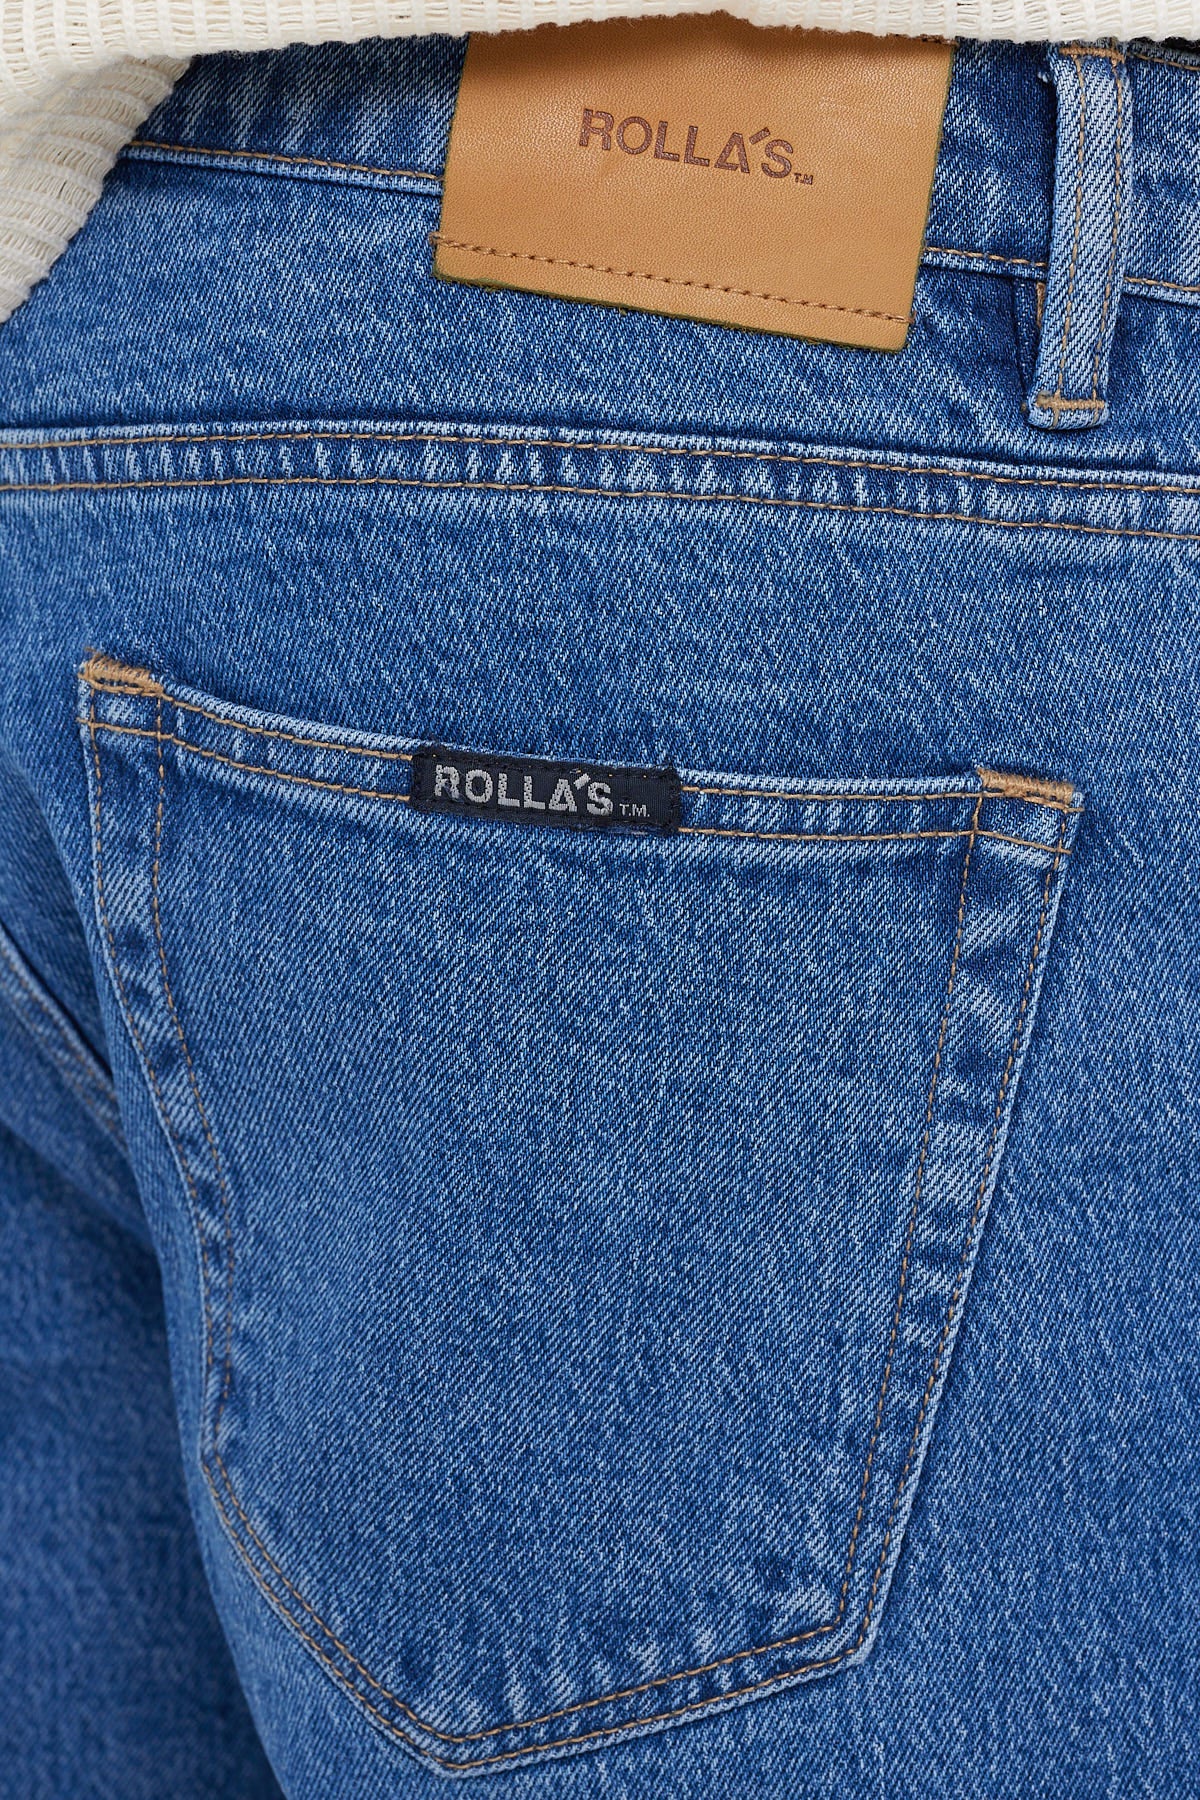 Rolla's Relaxo Chop Jean Vintage Blue